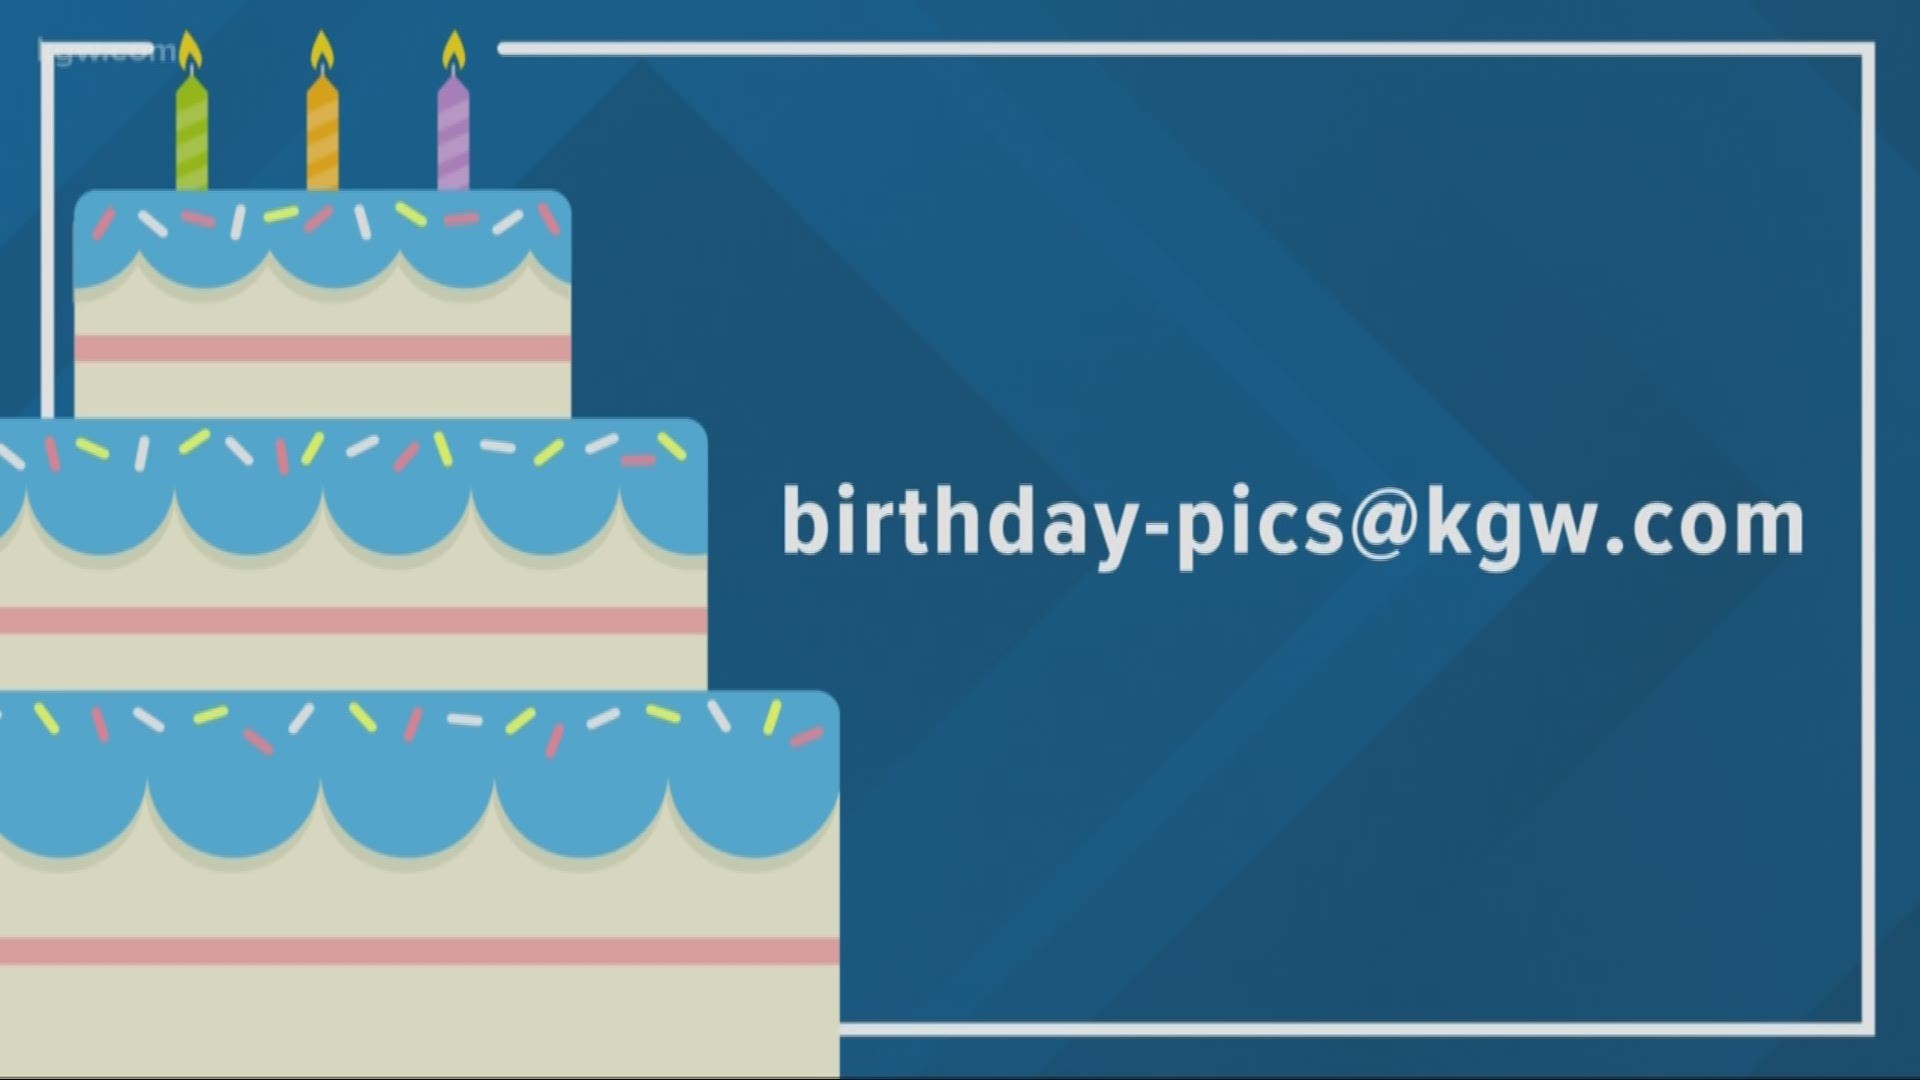 KGW viewer birthdays: 4-15-19